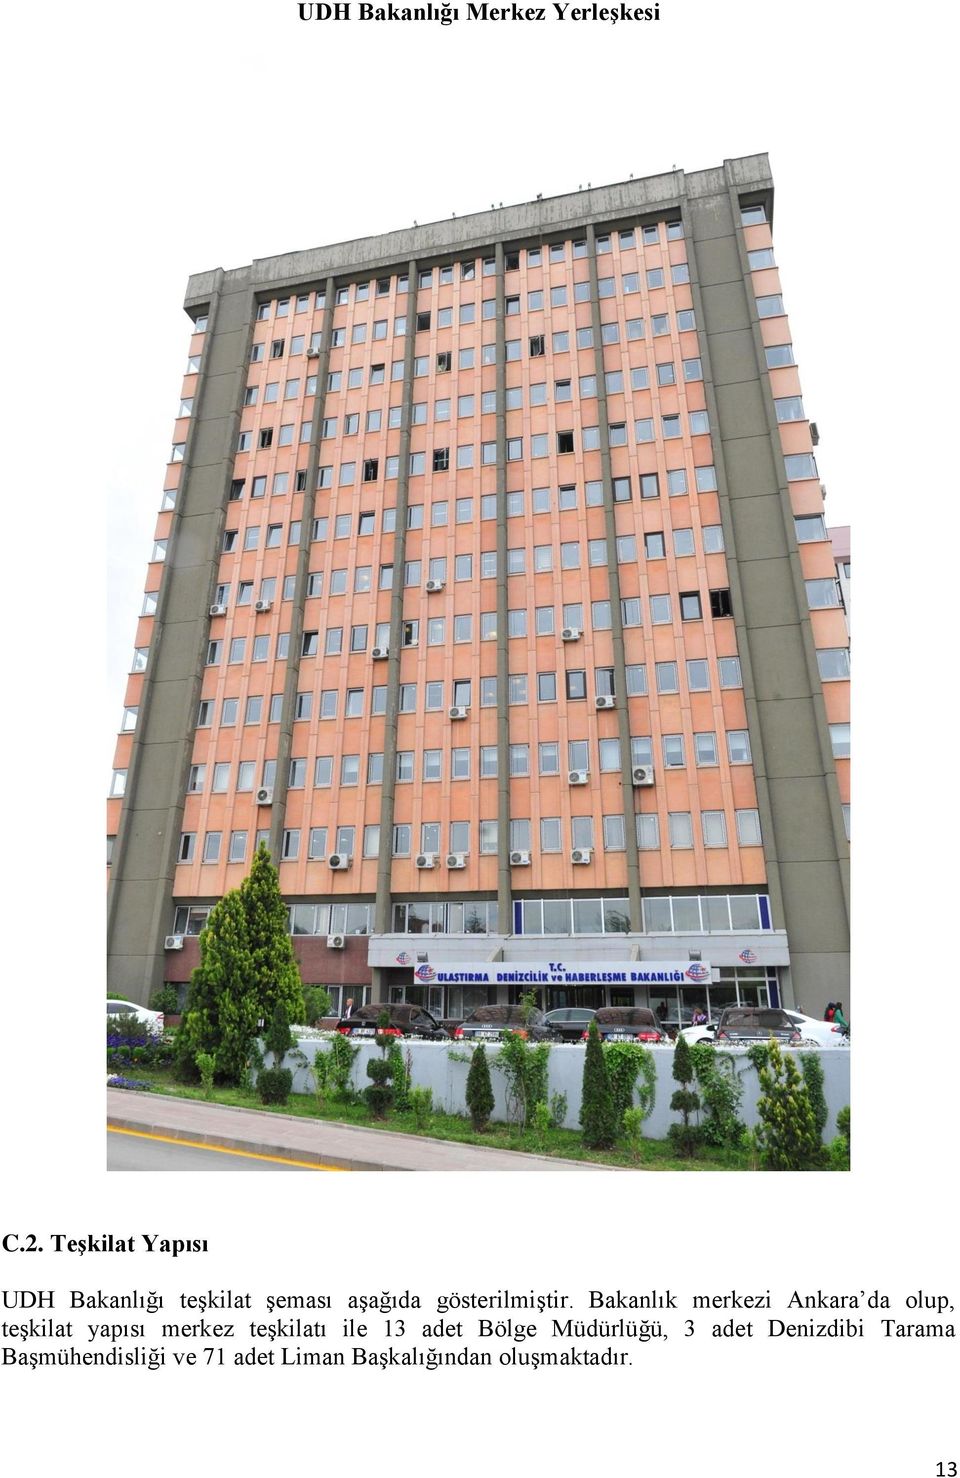 Bakanlık merkezi Ankara da olup, teşkilat yapısı merkez teşkilatı ile 13